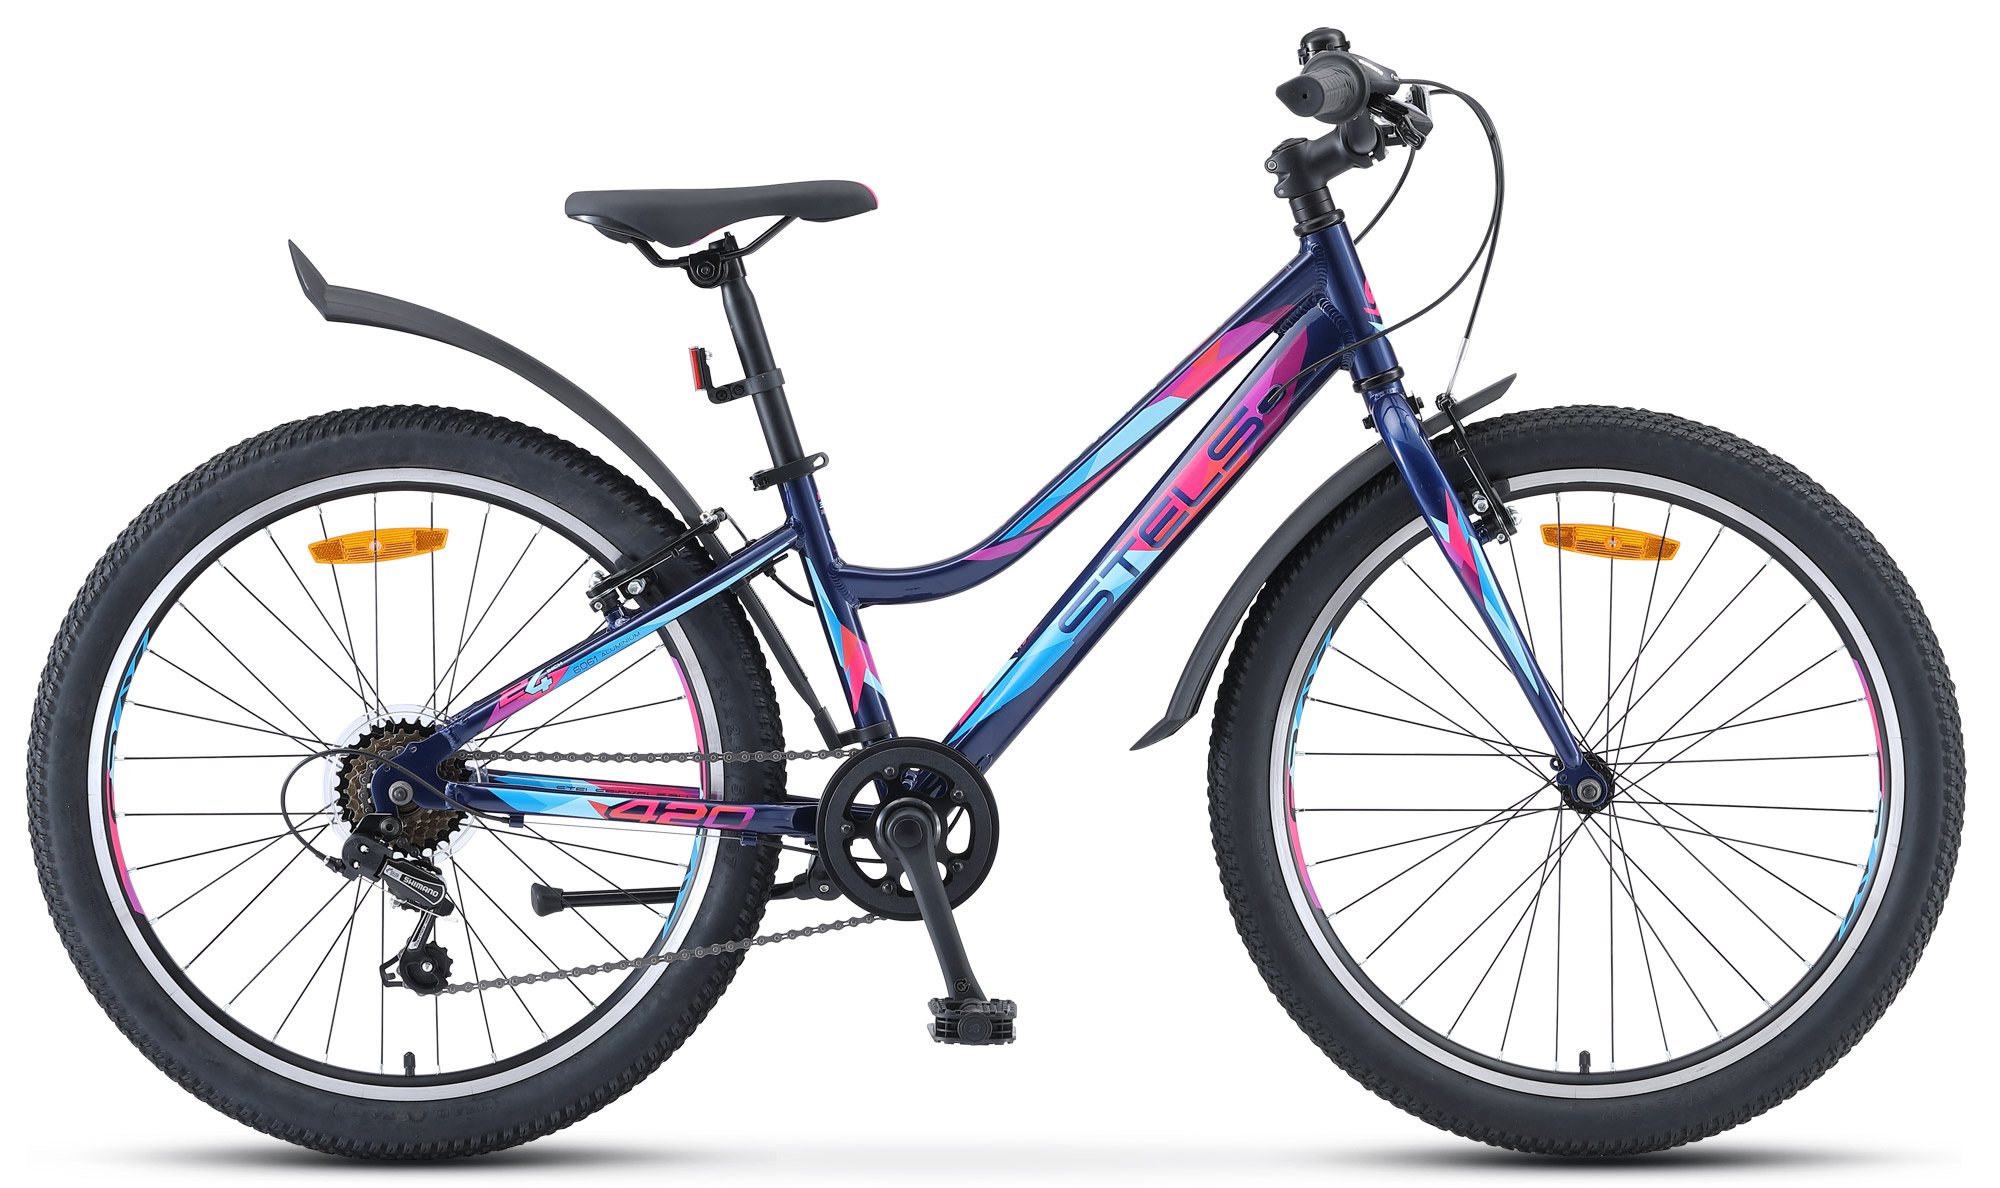  Отзывы о Подростковом велосипеде Stels Navigator 420 V V030 2020